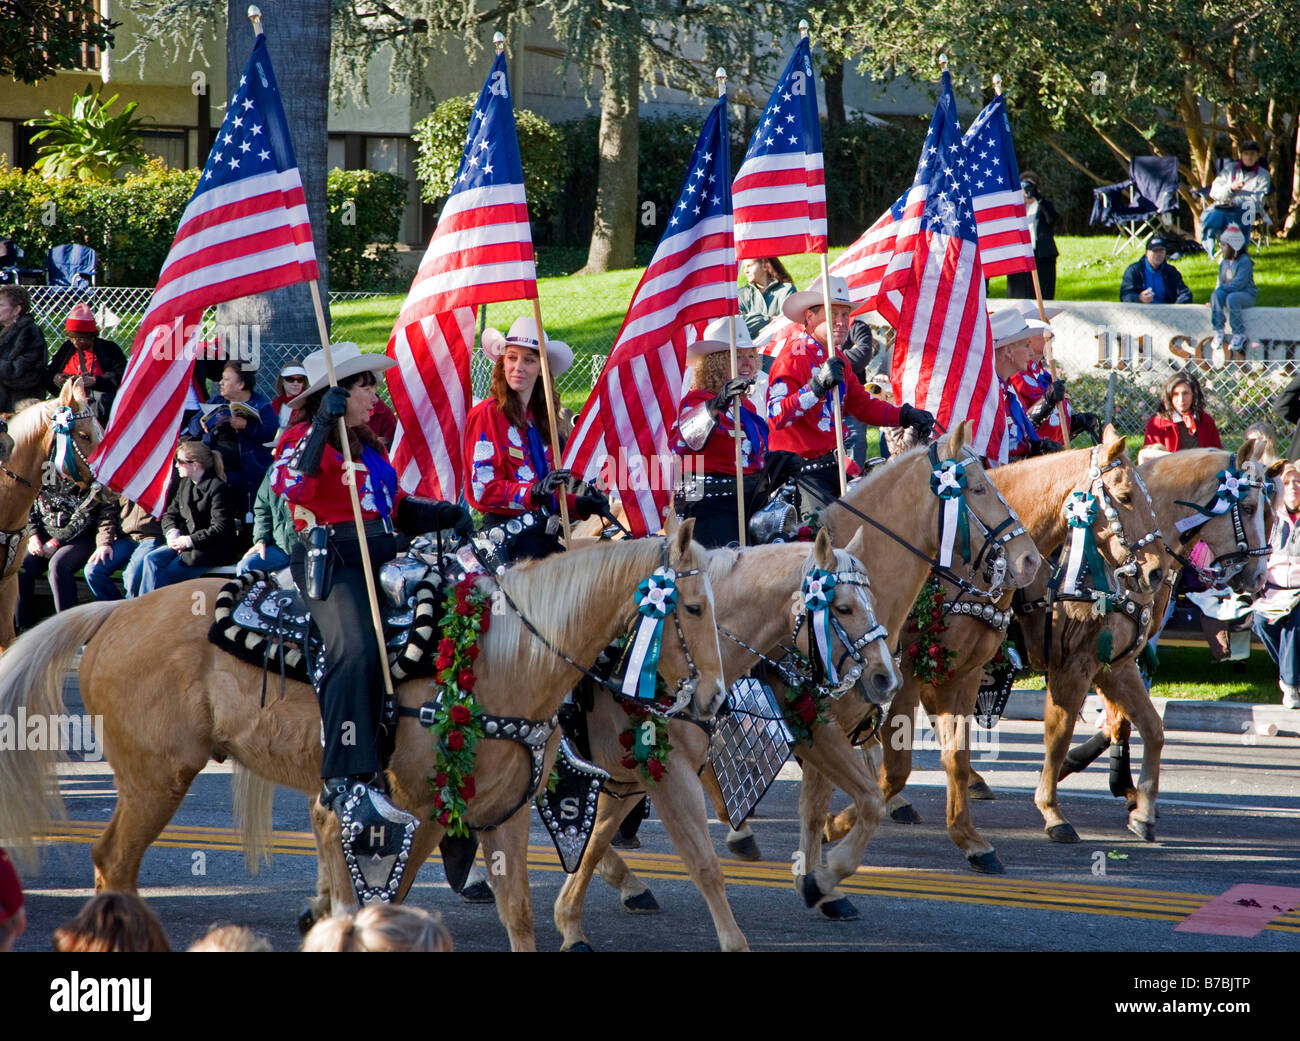 Les cavaliers avec des drapeaux américains dans le New Years Day annuel Rose Bowl Parade, Pasadena, Californie, USA Banque D'Images